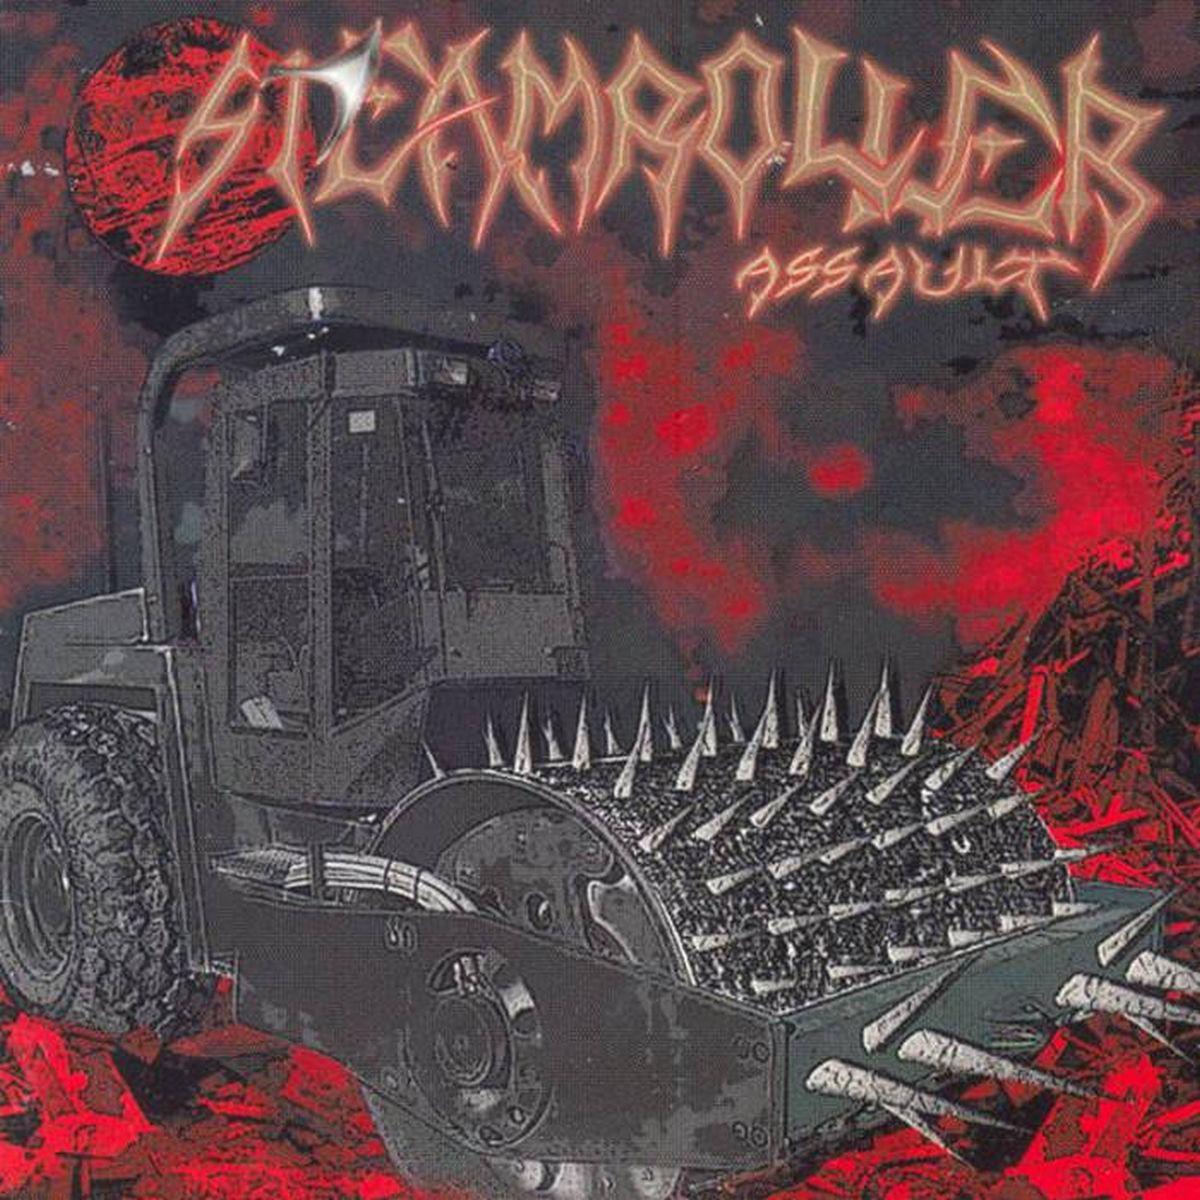 Steamroller Assault - Discography (2002-2017) .